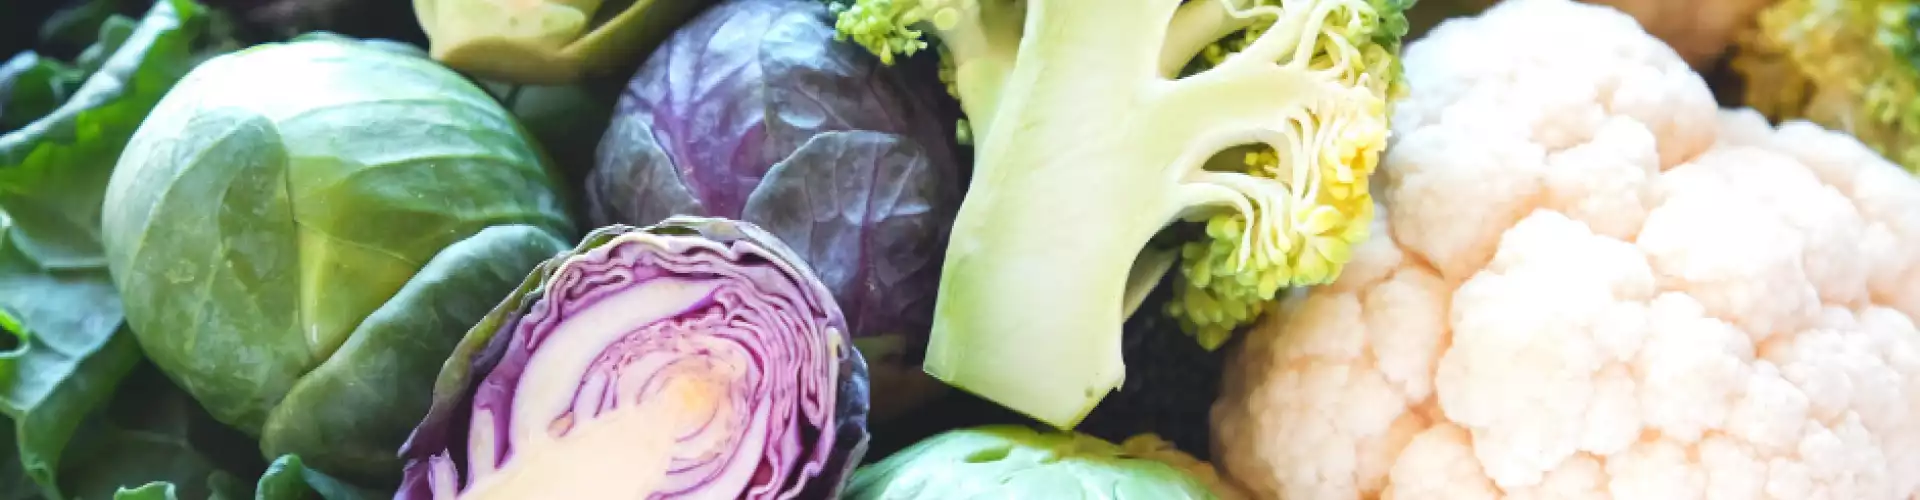 Trois choses à faire avec des légumes crucifères